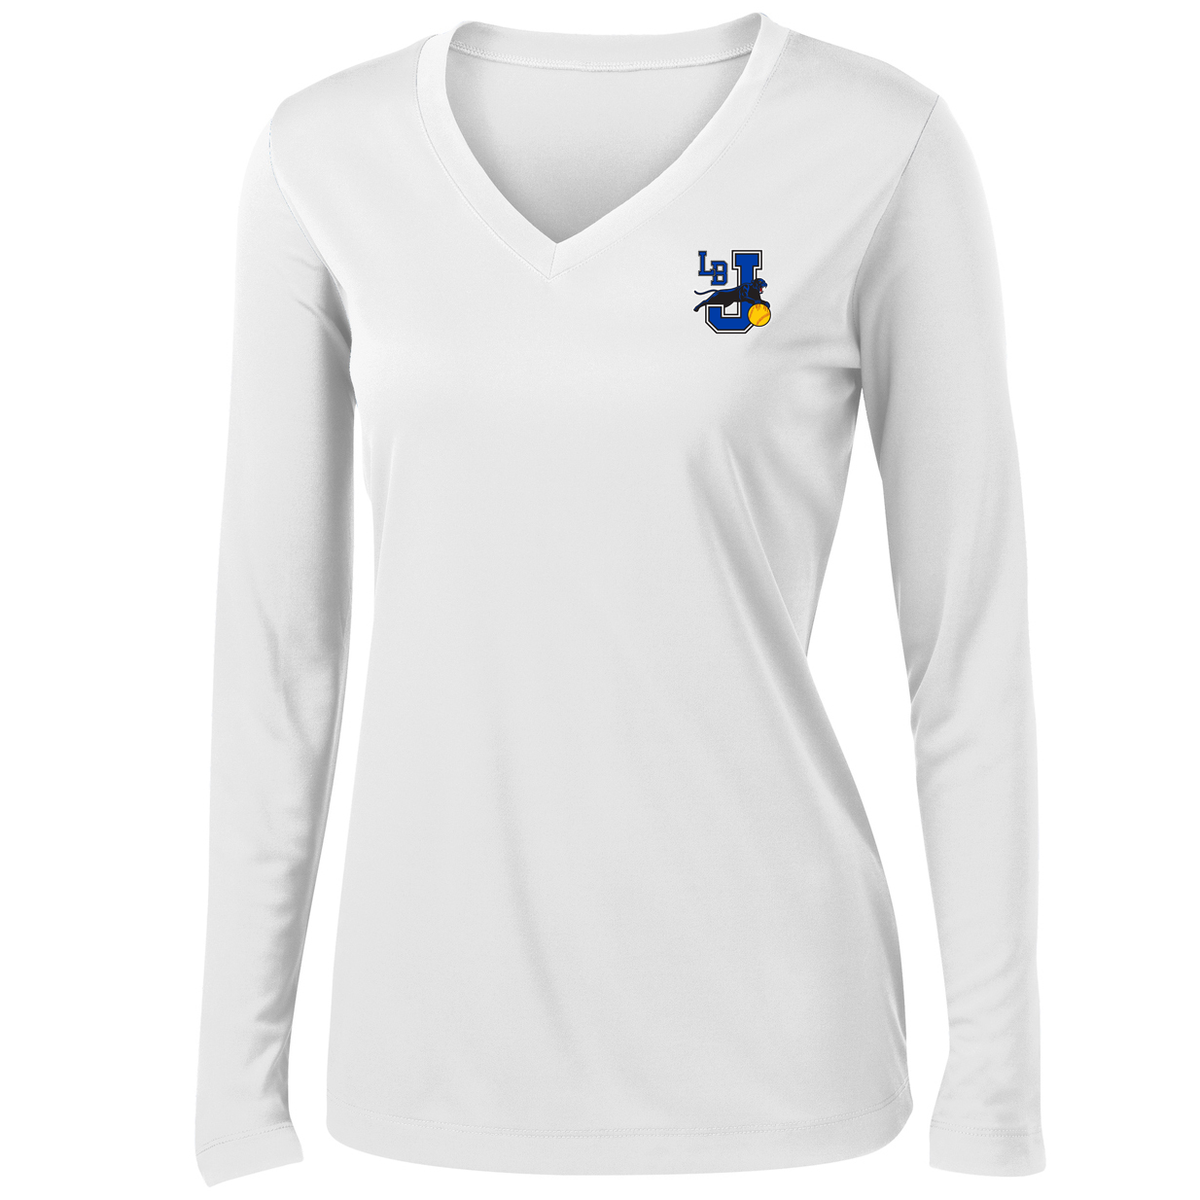 Long Beach Softball Women's Long Sleeve Performance Shirt